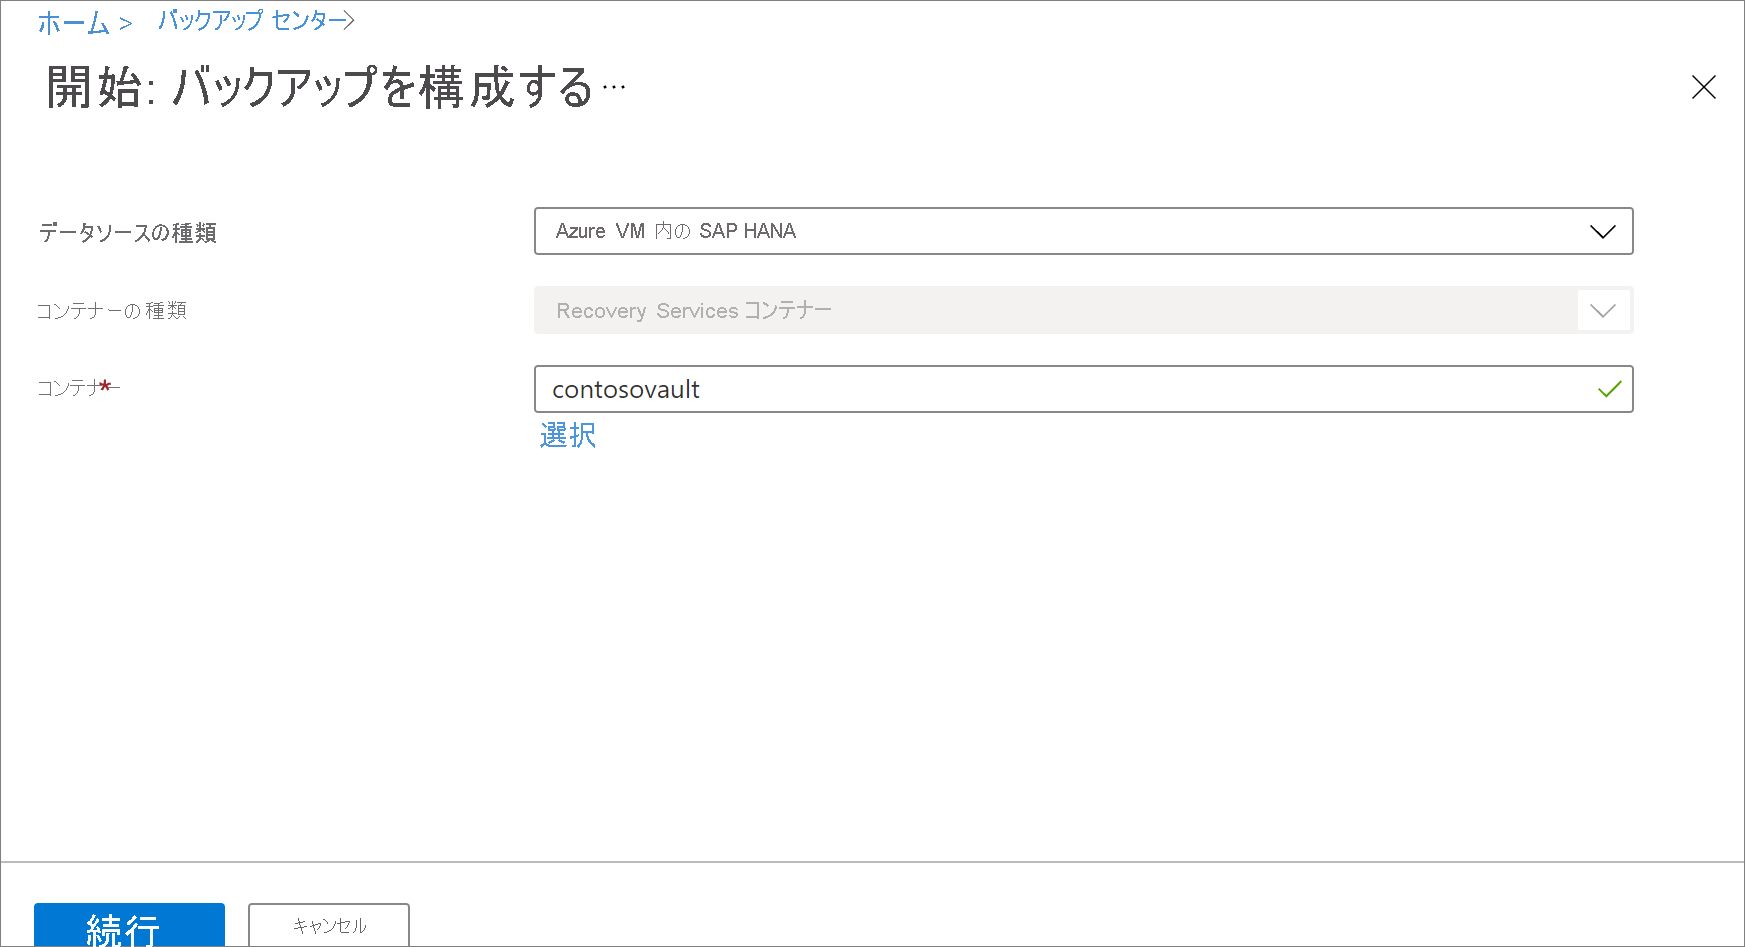 データソースの種類として [Azure VM の SAP HANA] を選択する場所を示すスクリーンショット。